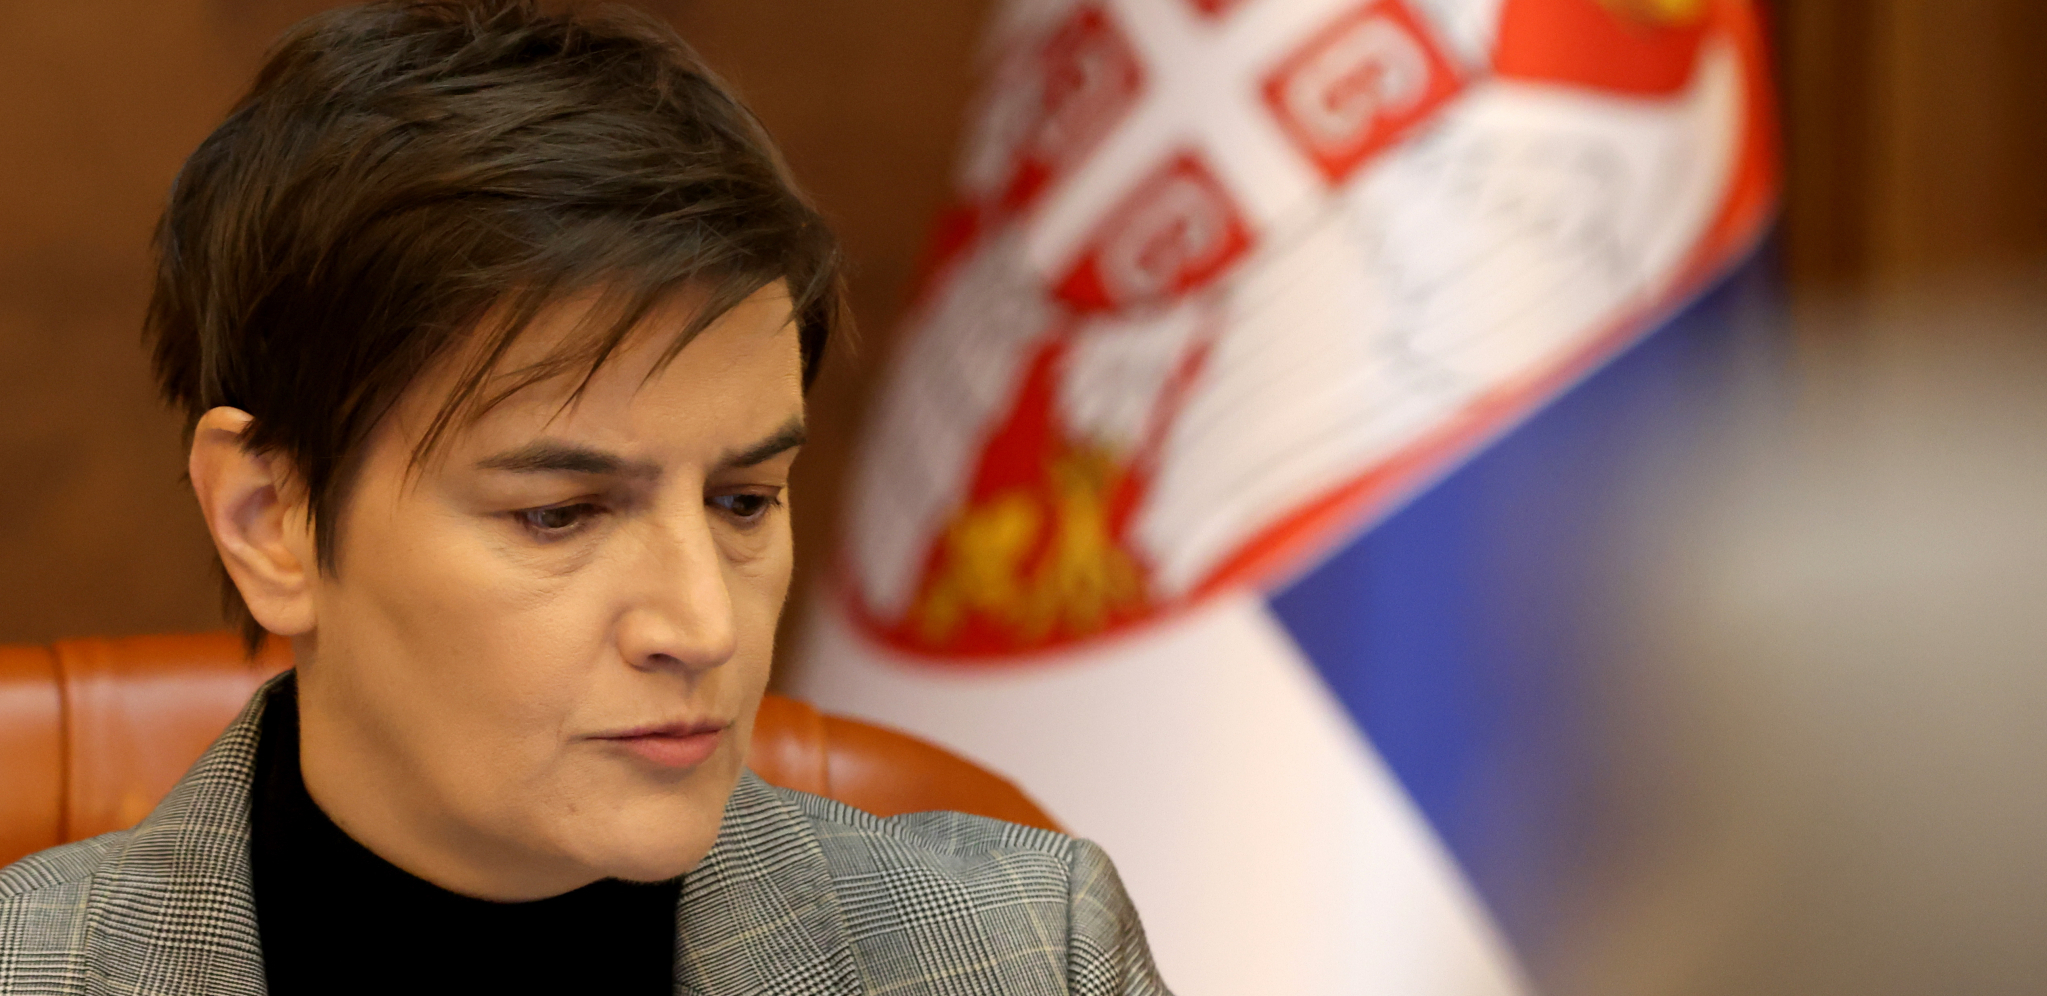 NE DELITE SLIKE UBIJENE DECE Premijerka Brnabić uputila apel: Vrhunac beščašća, zloupotrebe, nepoštovanja žrtava i njihovih porodica